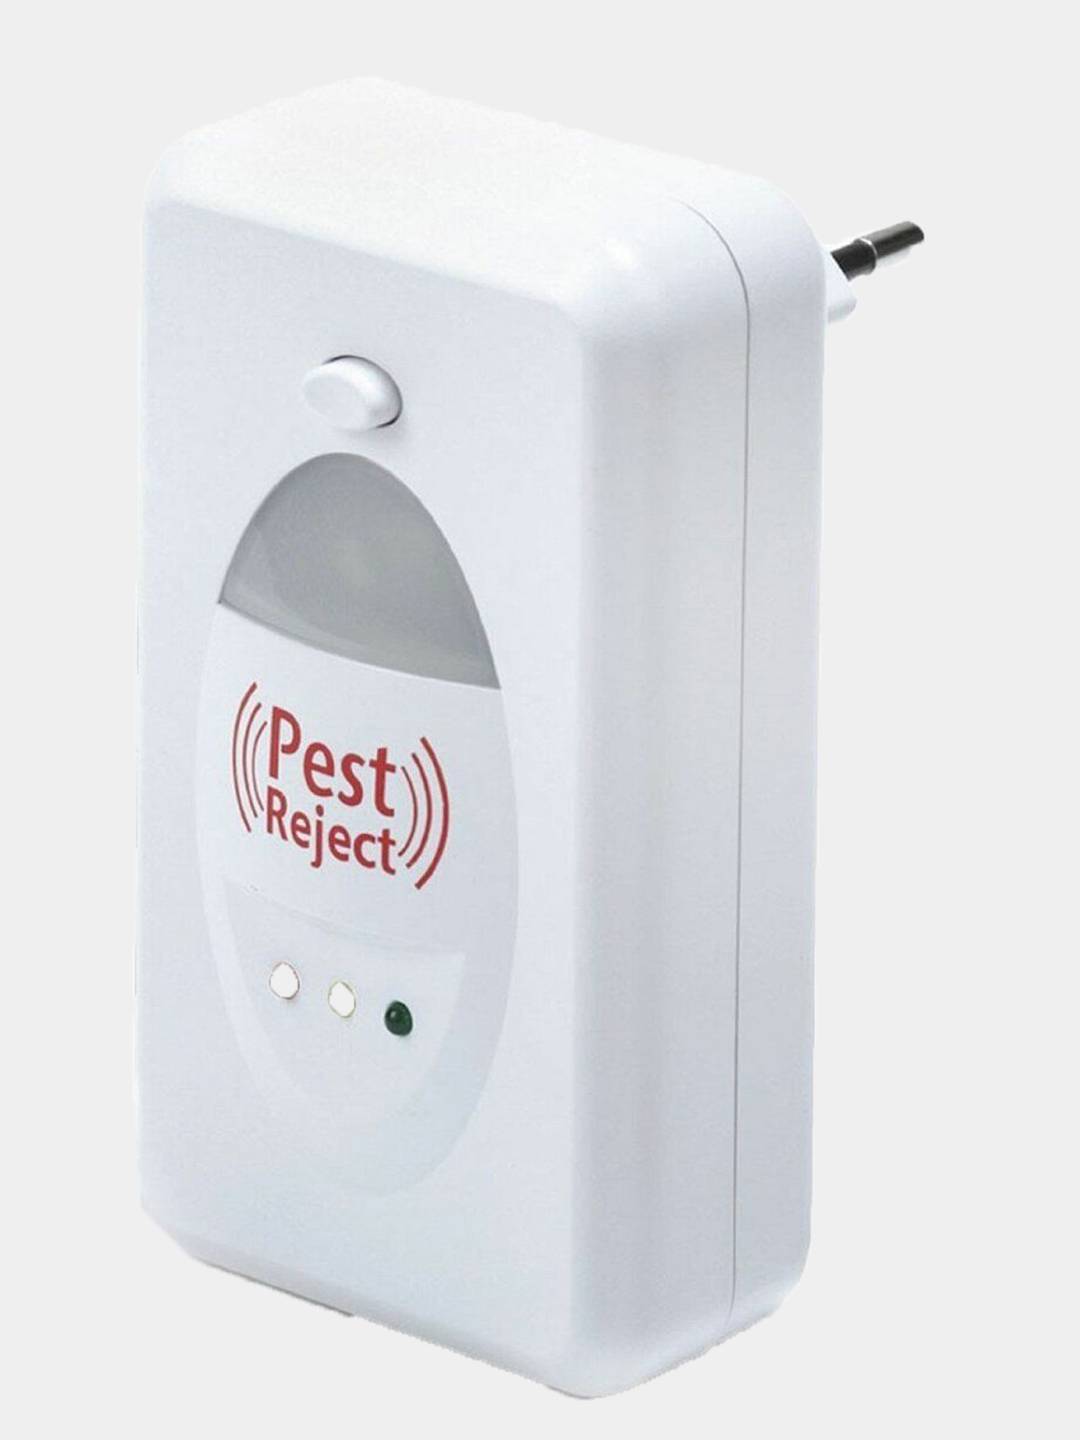 Pest reject: ультразвуковой отпугиватель насекомых и грызунов, описание и инструкция по использованию